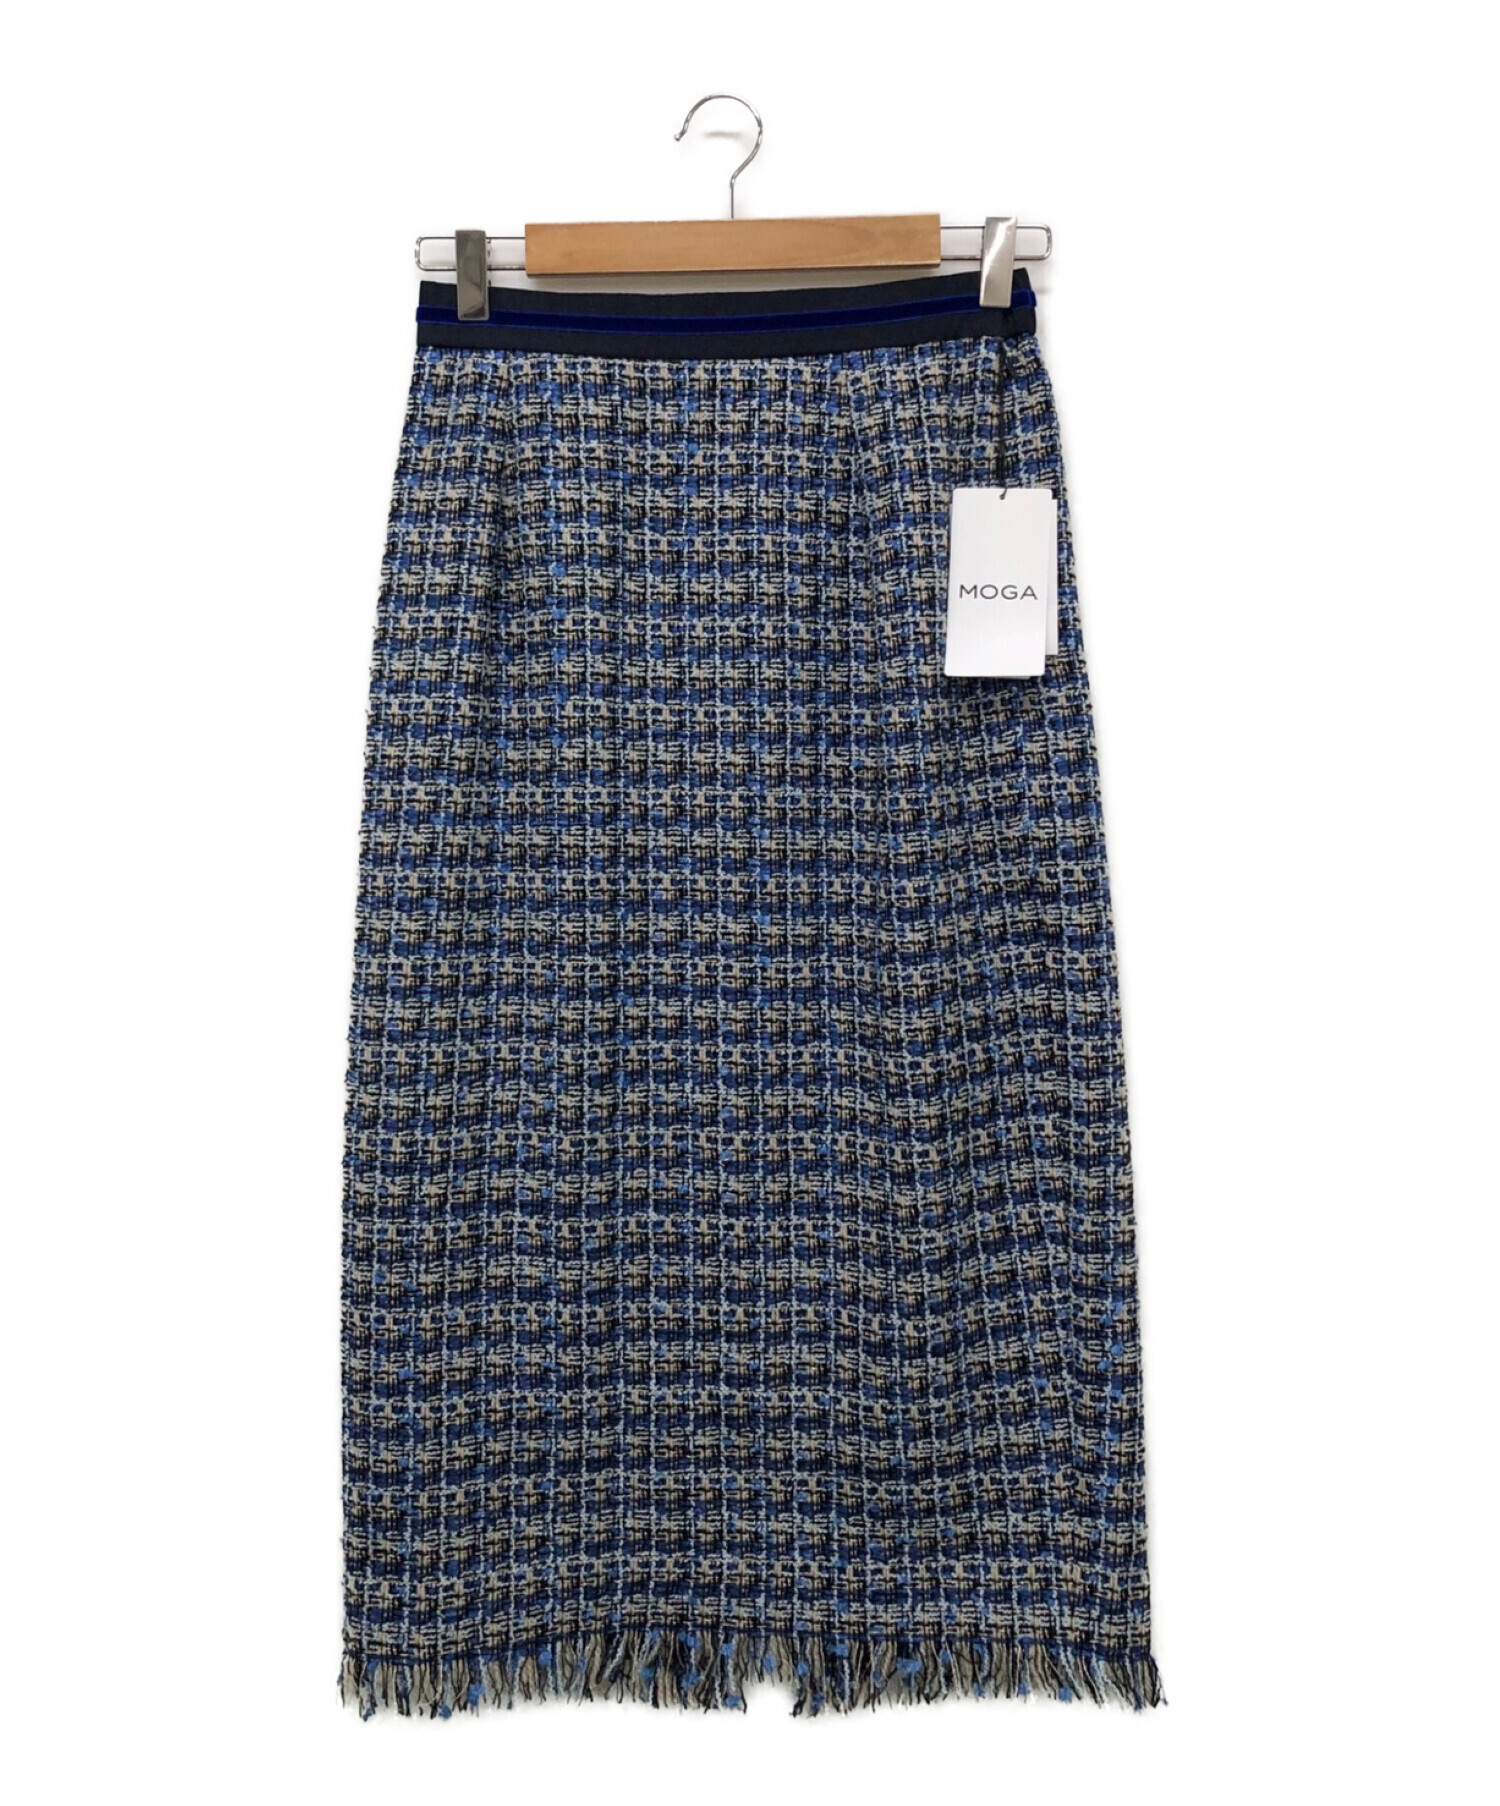 MOGA スカート - スカート